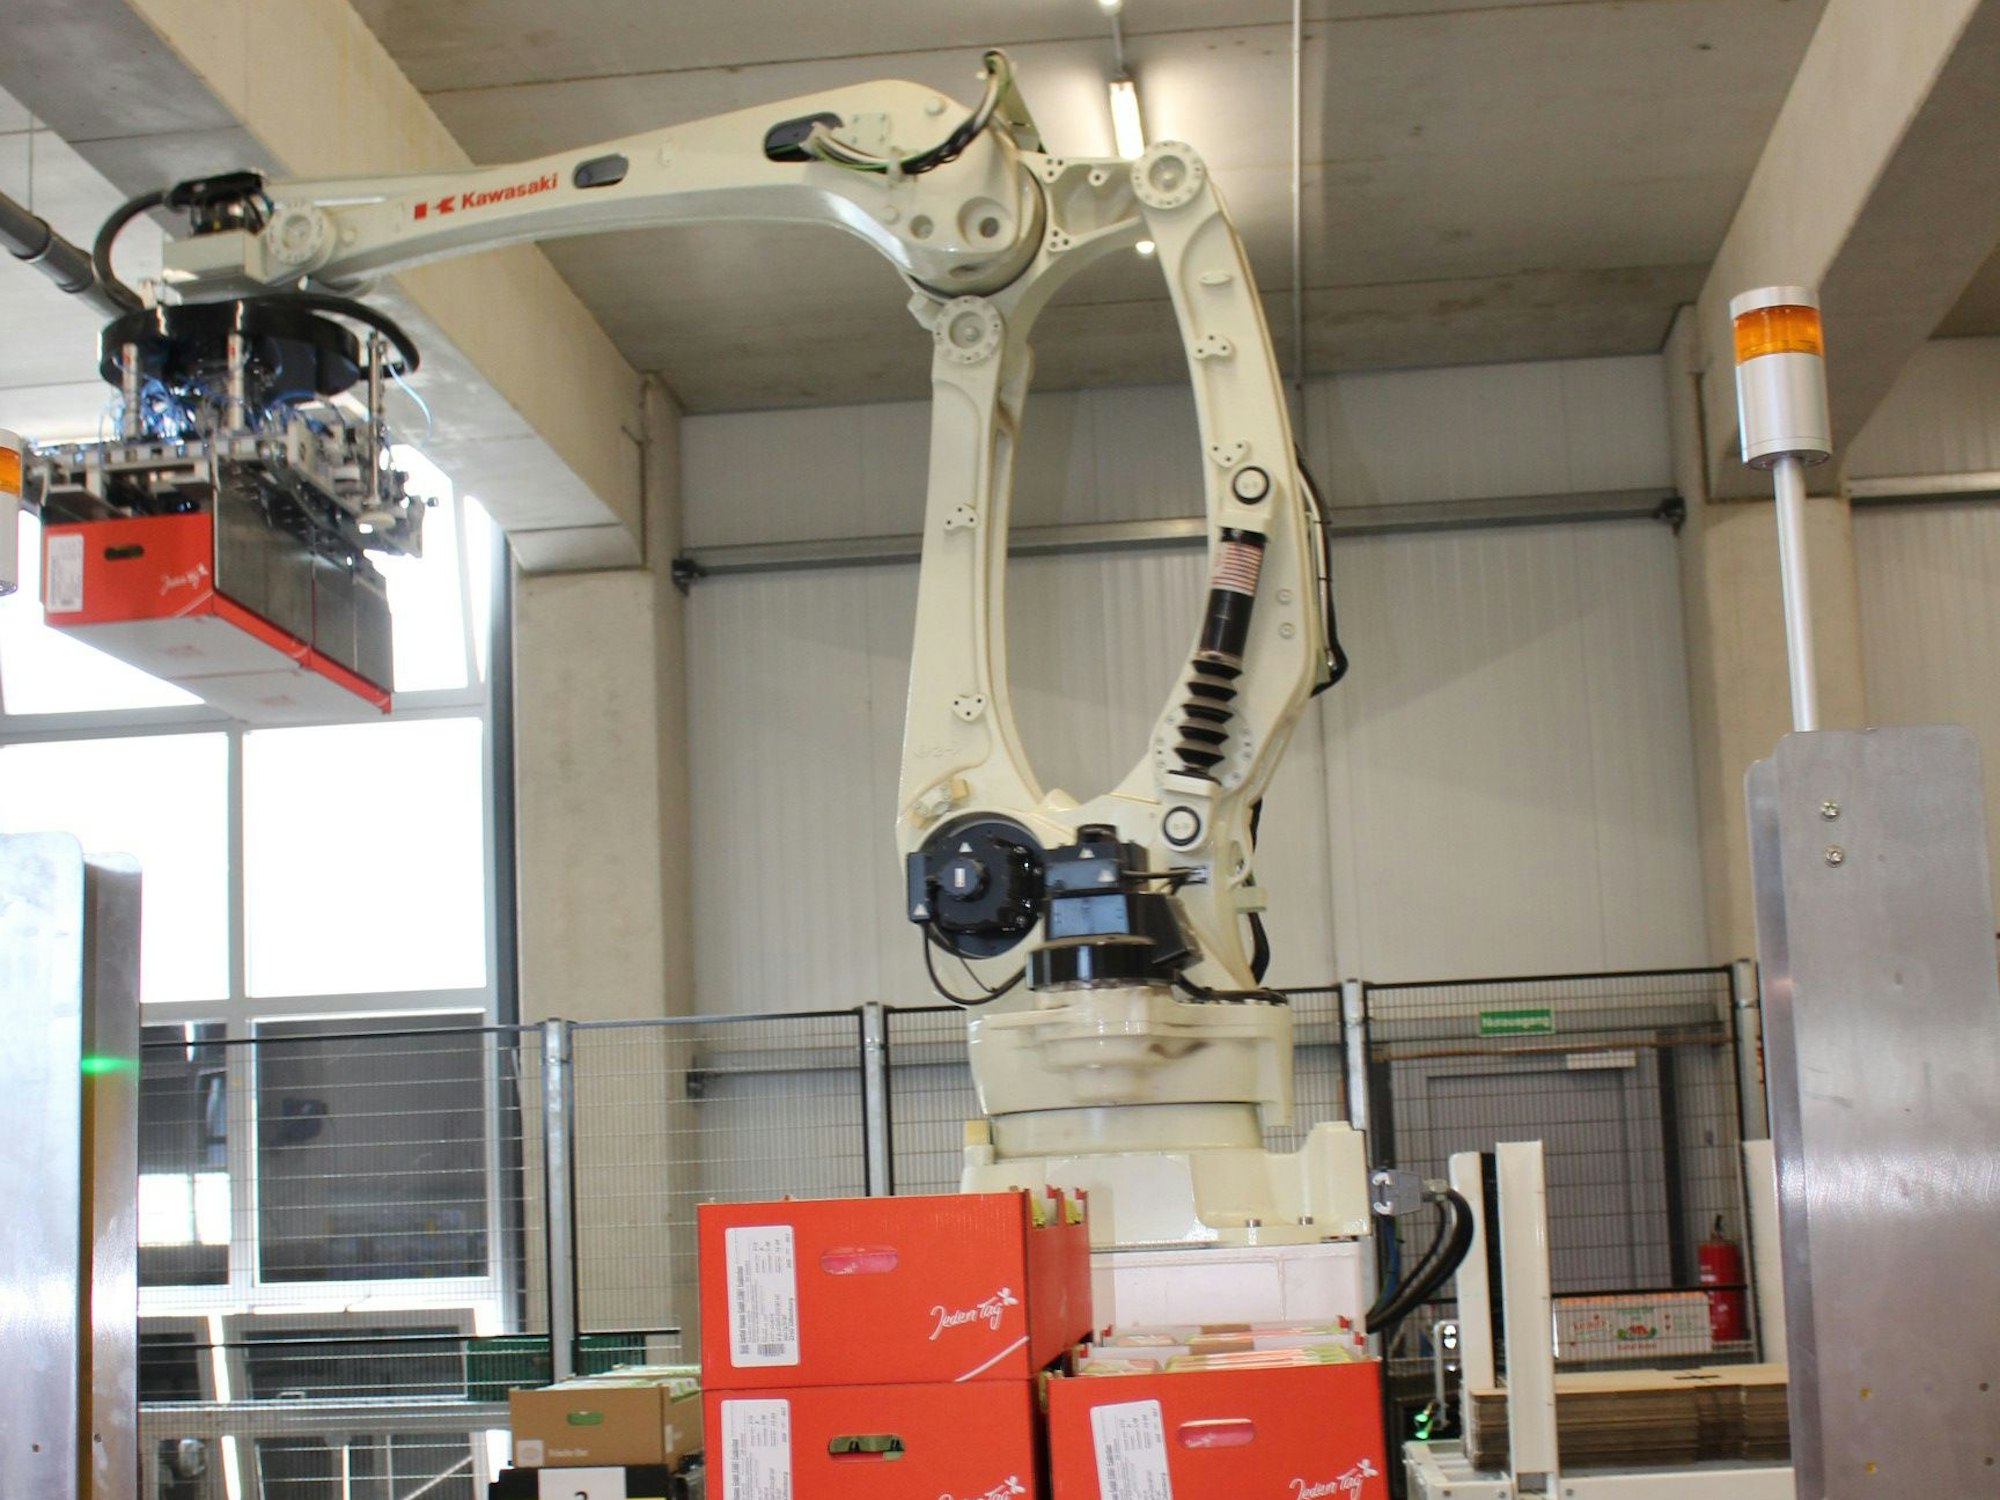 Ein Roboterarm hebt eine Packung mit Eiern an, um sie auf einem Stapel legen.